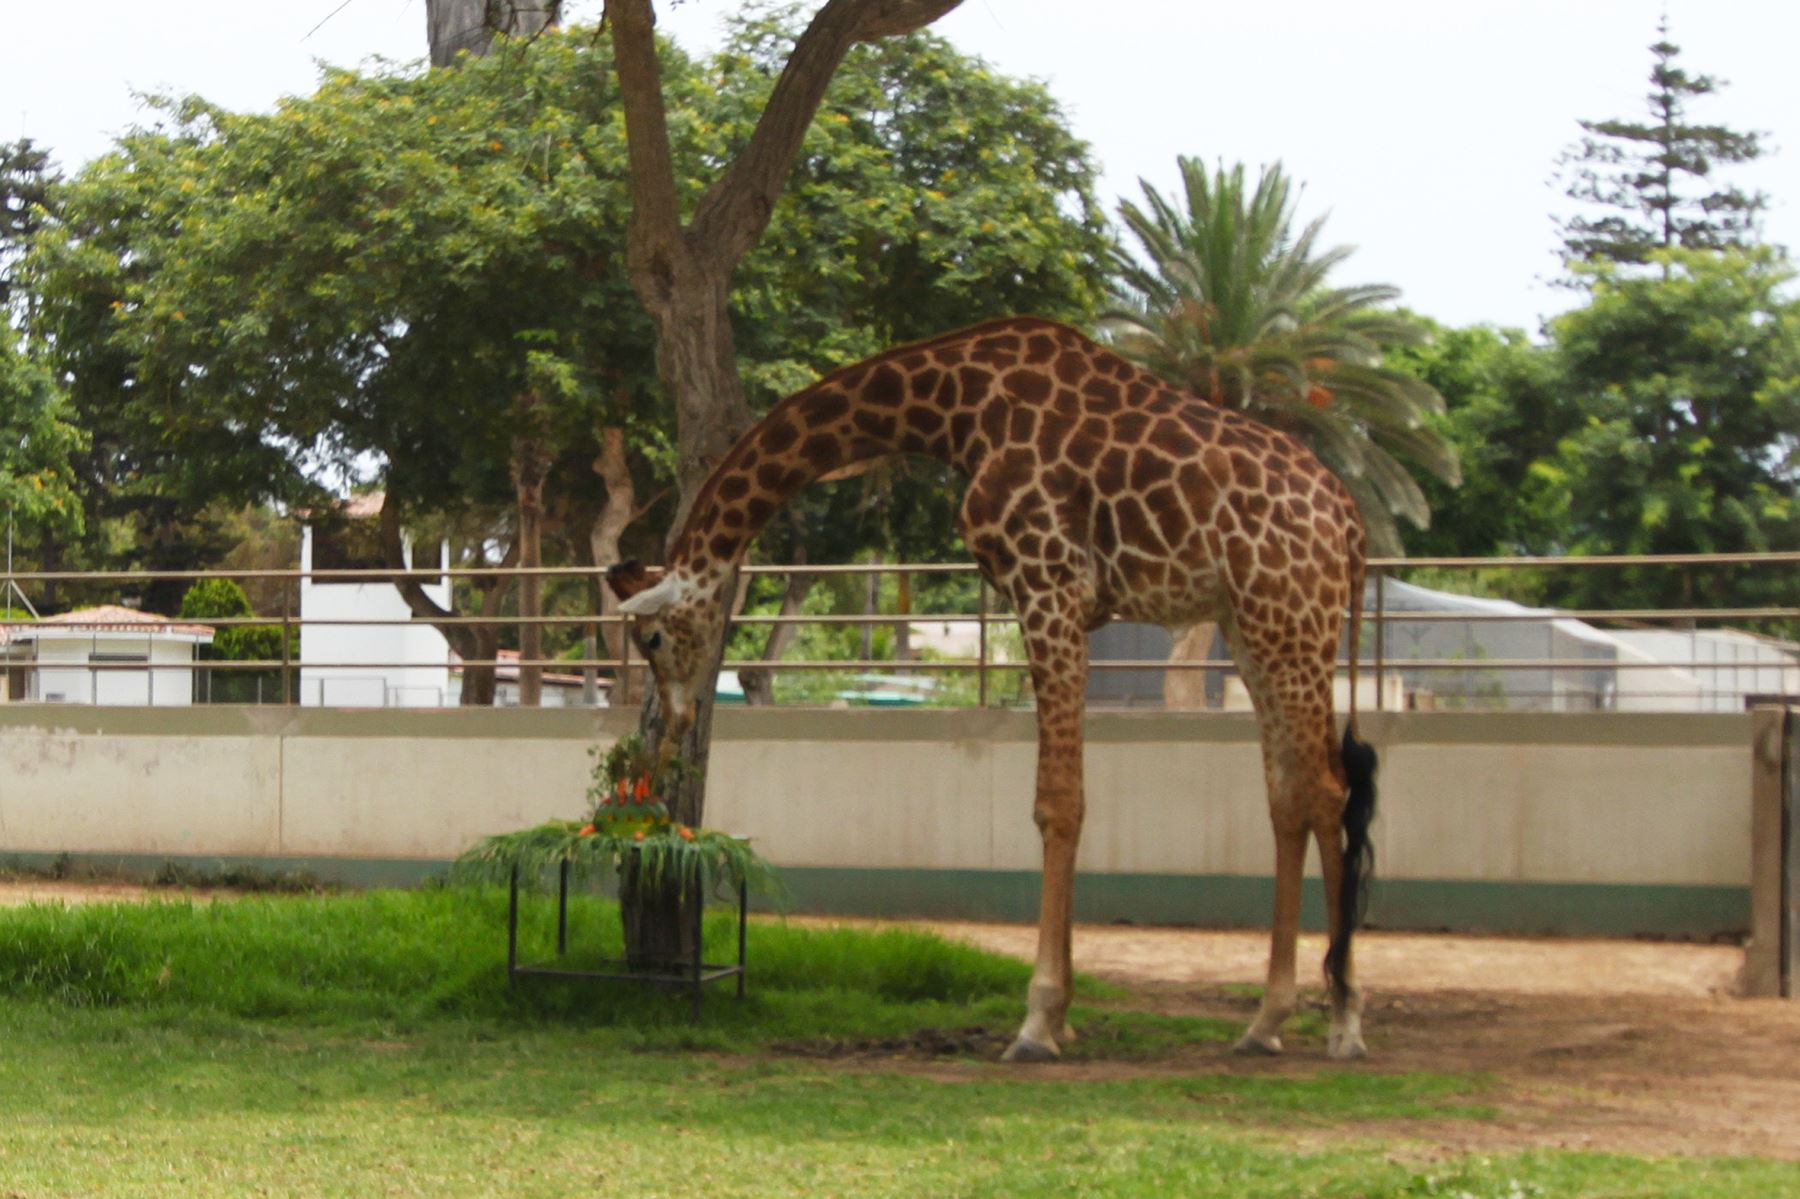 Este domingo habrá un show especial en Parque de Las Leyendas para conmemorar cumpleaños de jirafa. Foto: Difusión